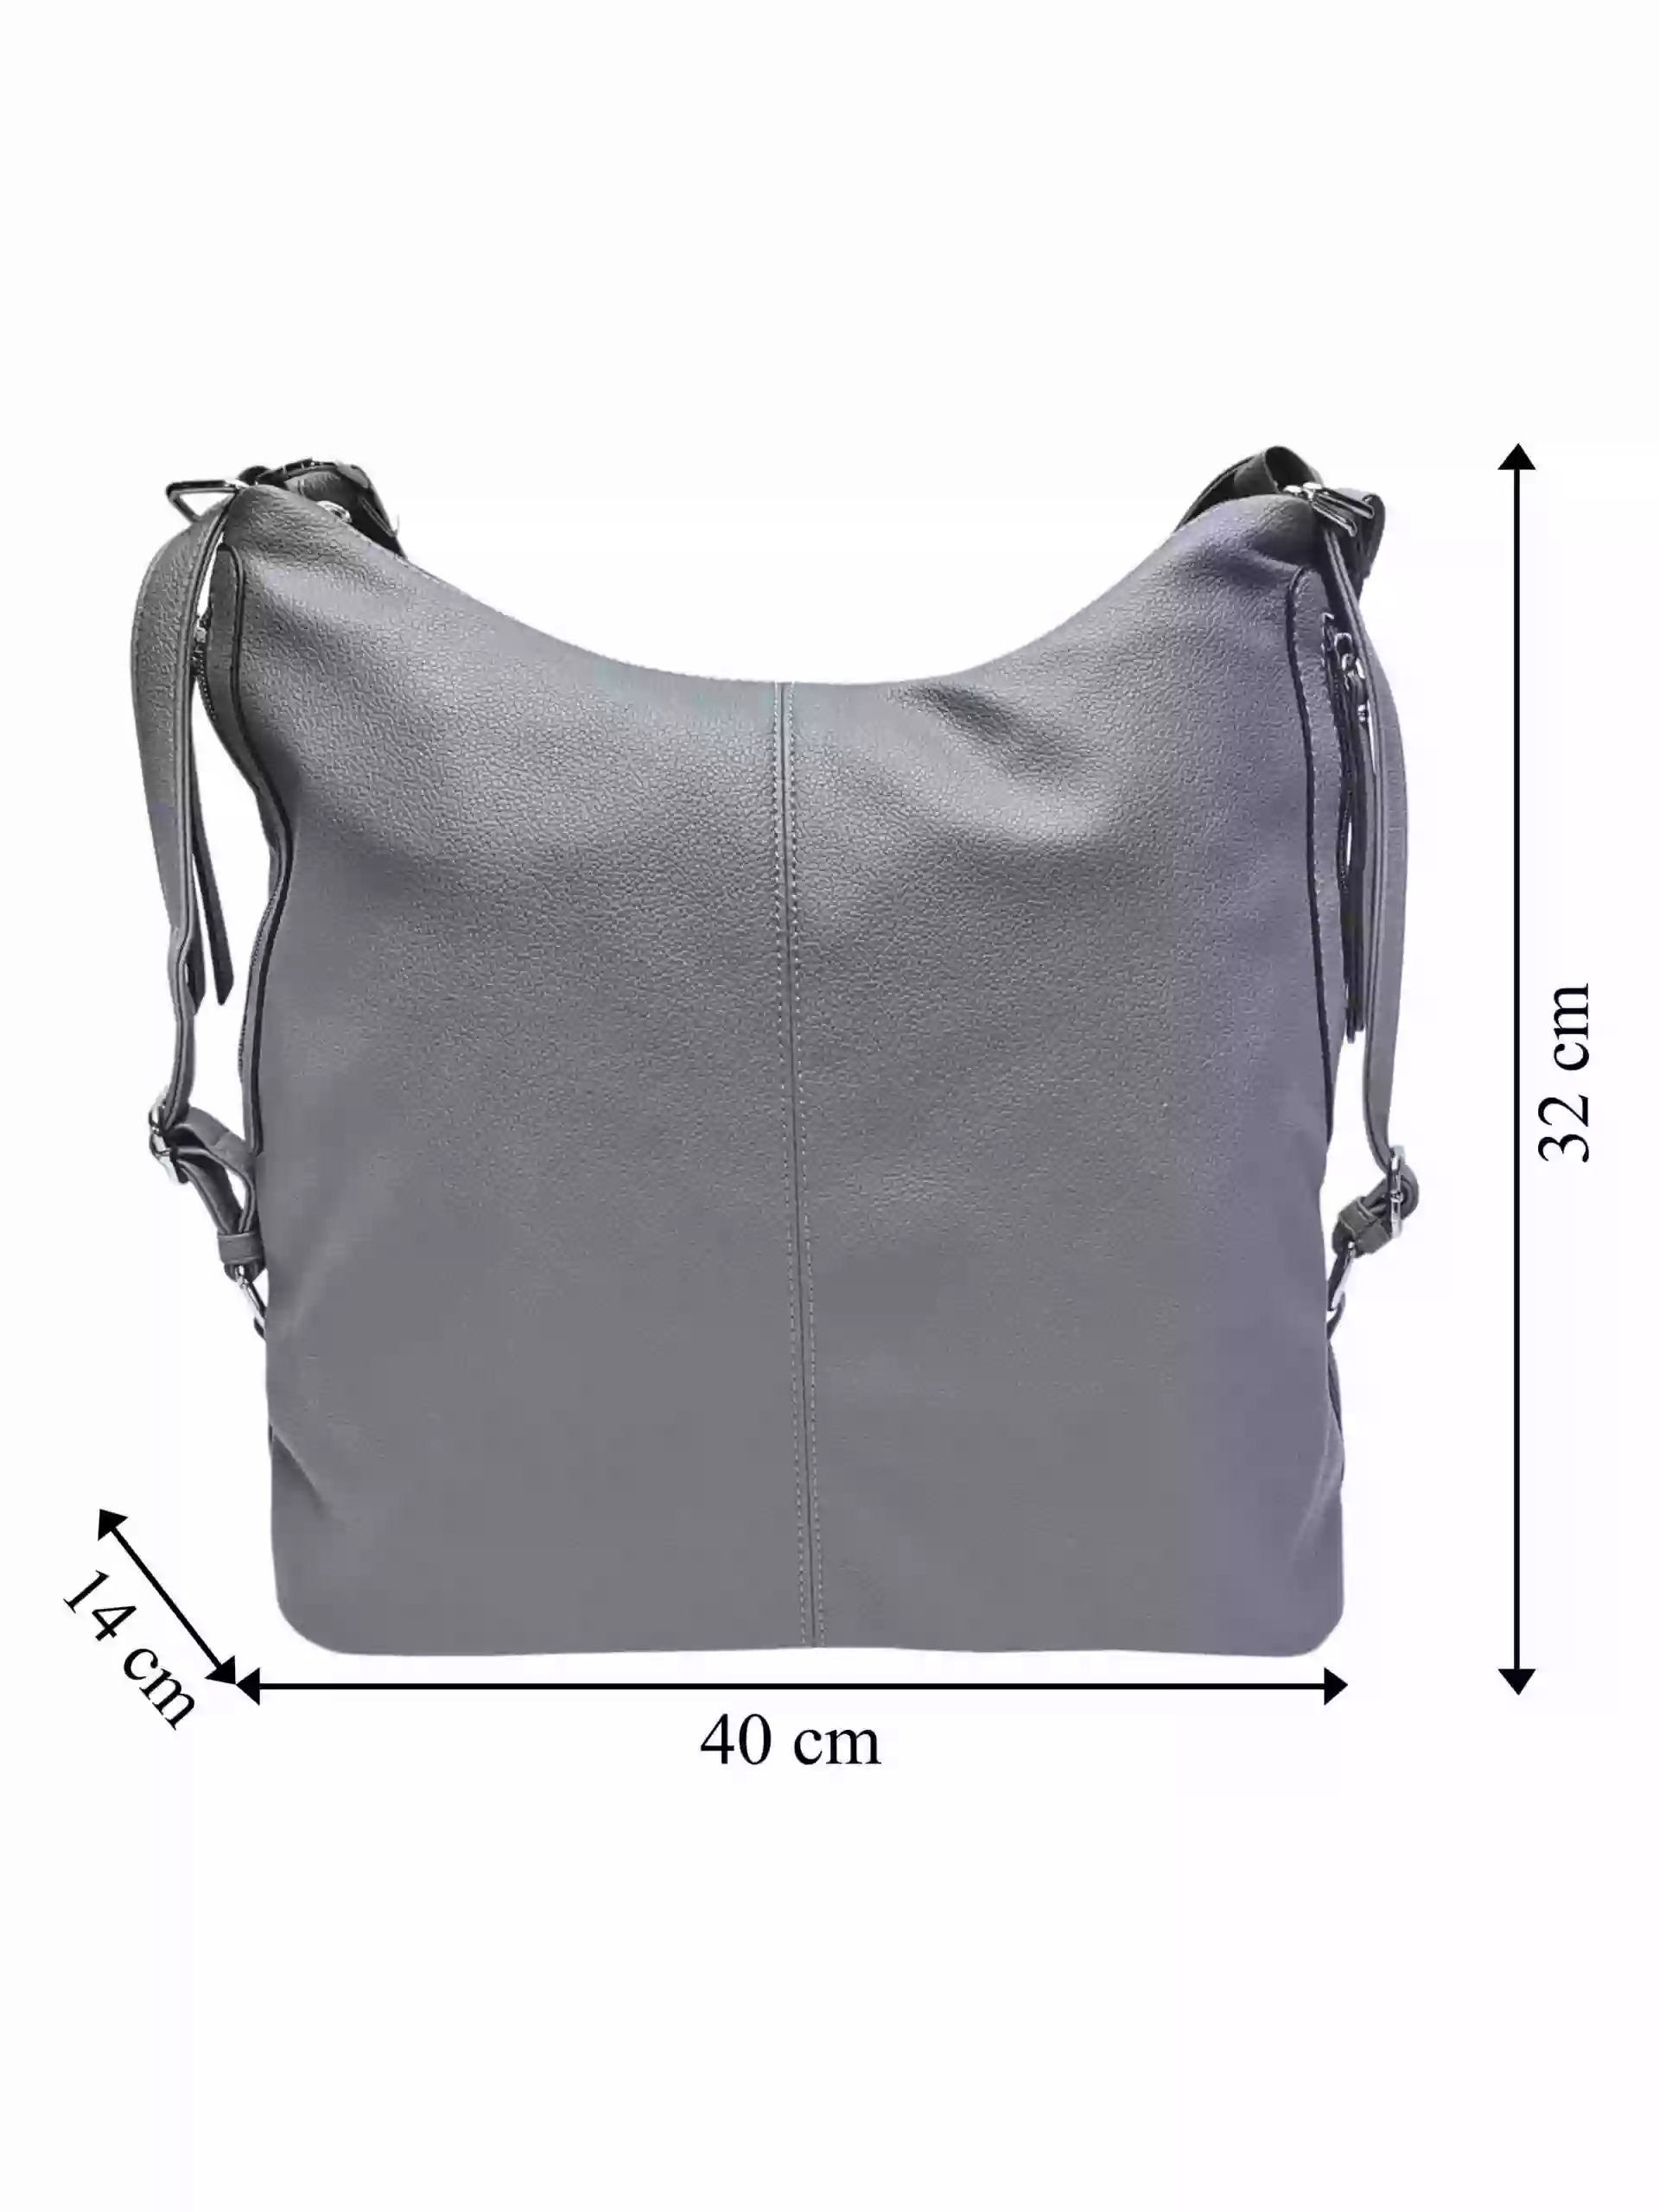 Velký středně šedý kabelko-batoh s bočními kapsami, Tapple, 9314-3, přední strana kabelko-batohu s rozměry